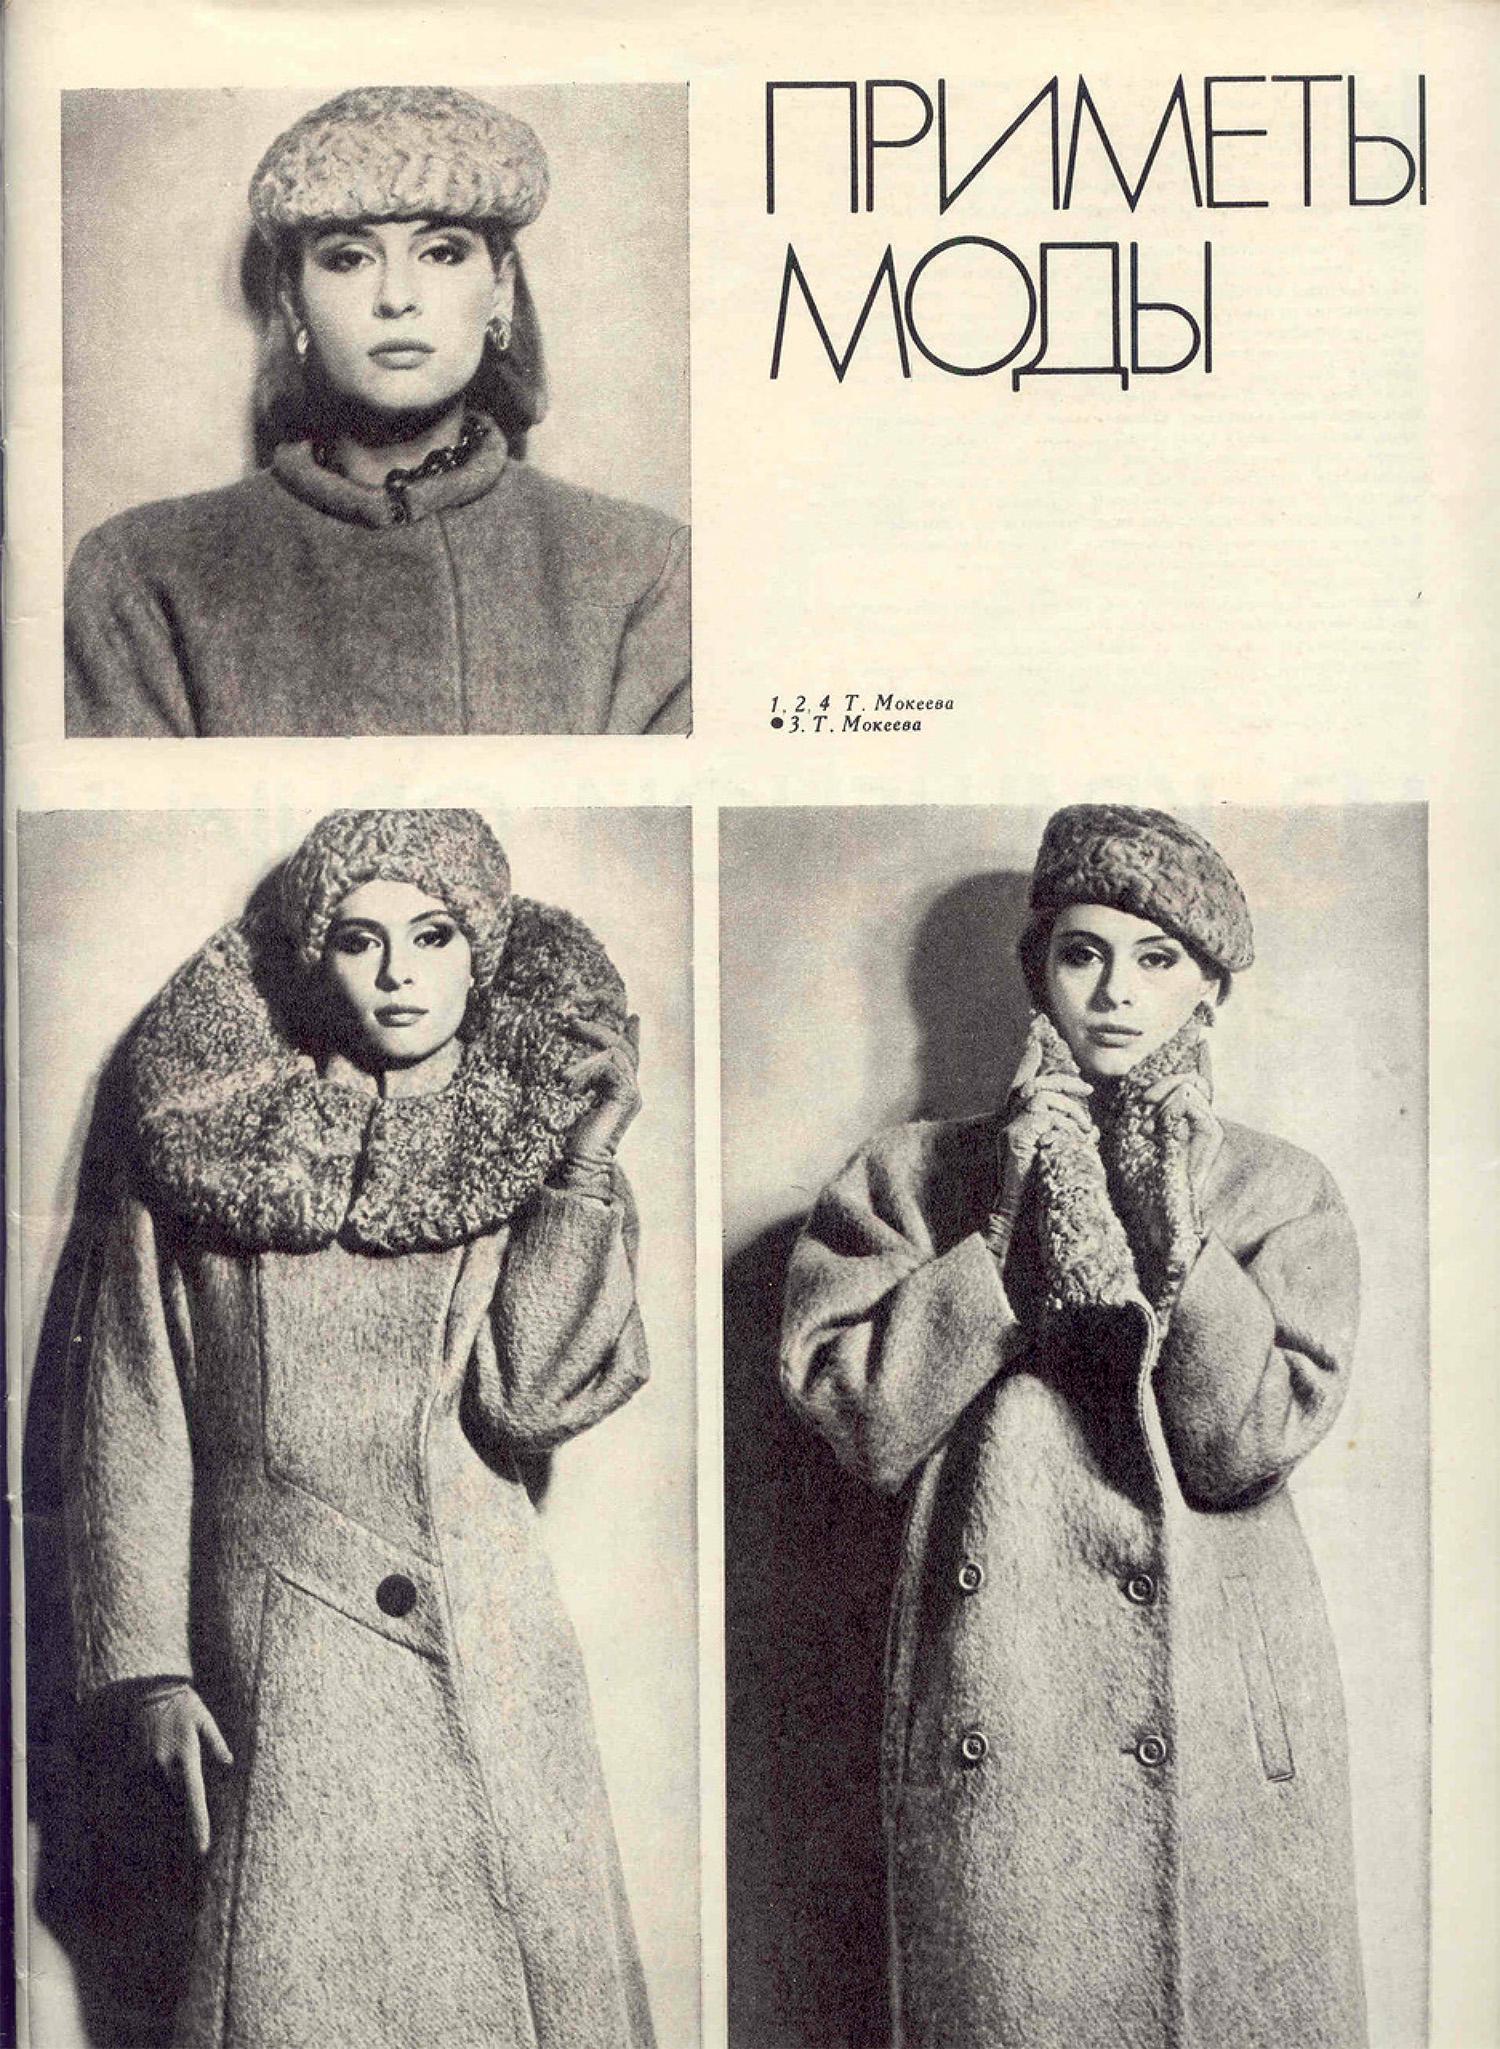 De Style soviétique ’86: la Mode russe à partir de l'Année de Tchernobyl